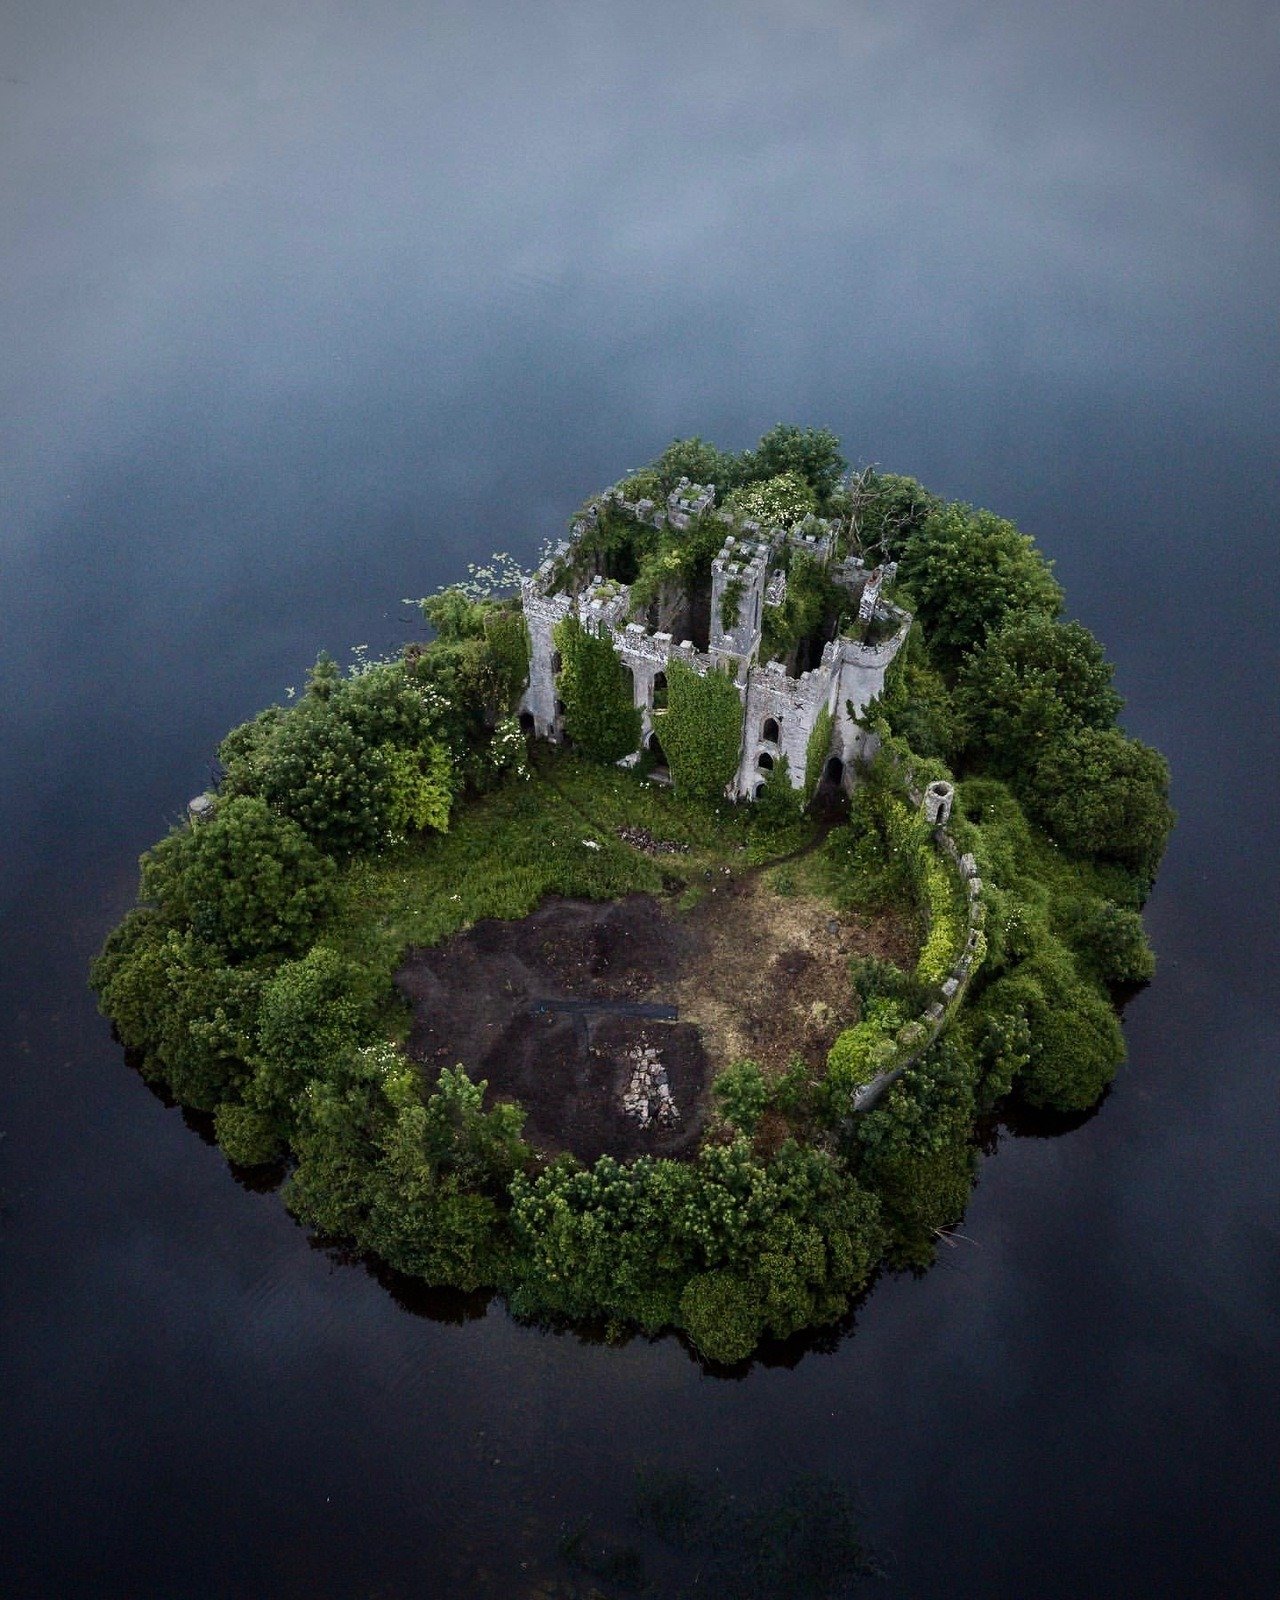 People live on islands. Замок MACDERMOTTS Ирландия. Заброшенный замок МАКДЕРМОТТ В Ирландии. Замок МАКДЕРМОТТ на острове Касл Айленд,. Замок МАКДЕРМОТТ Ирландия заброшенный на острове.